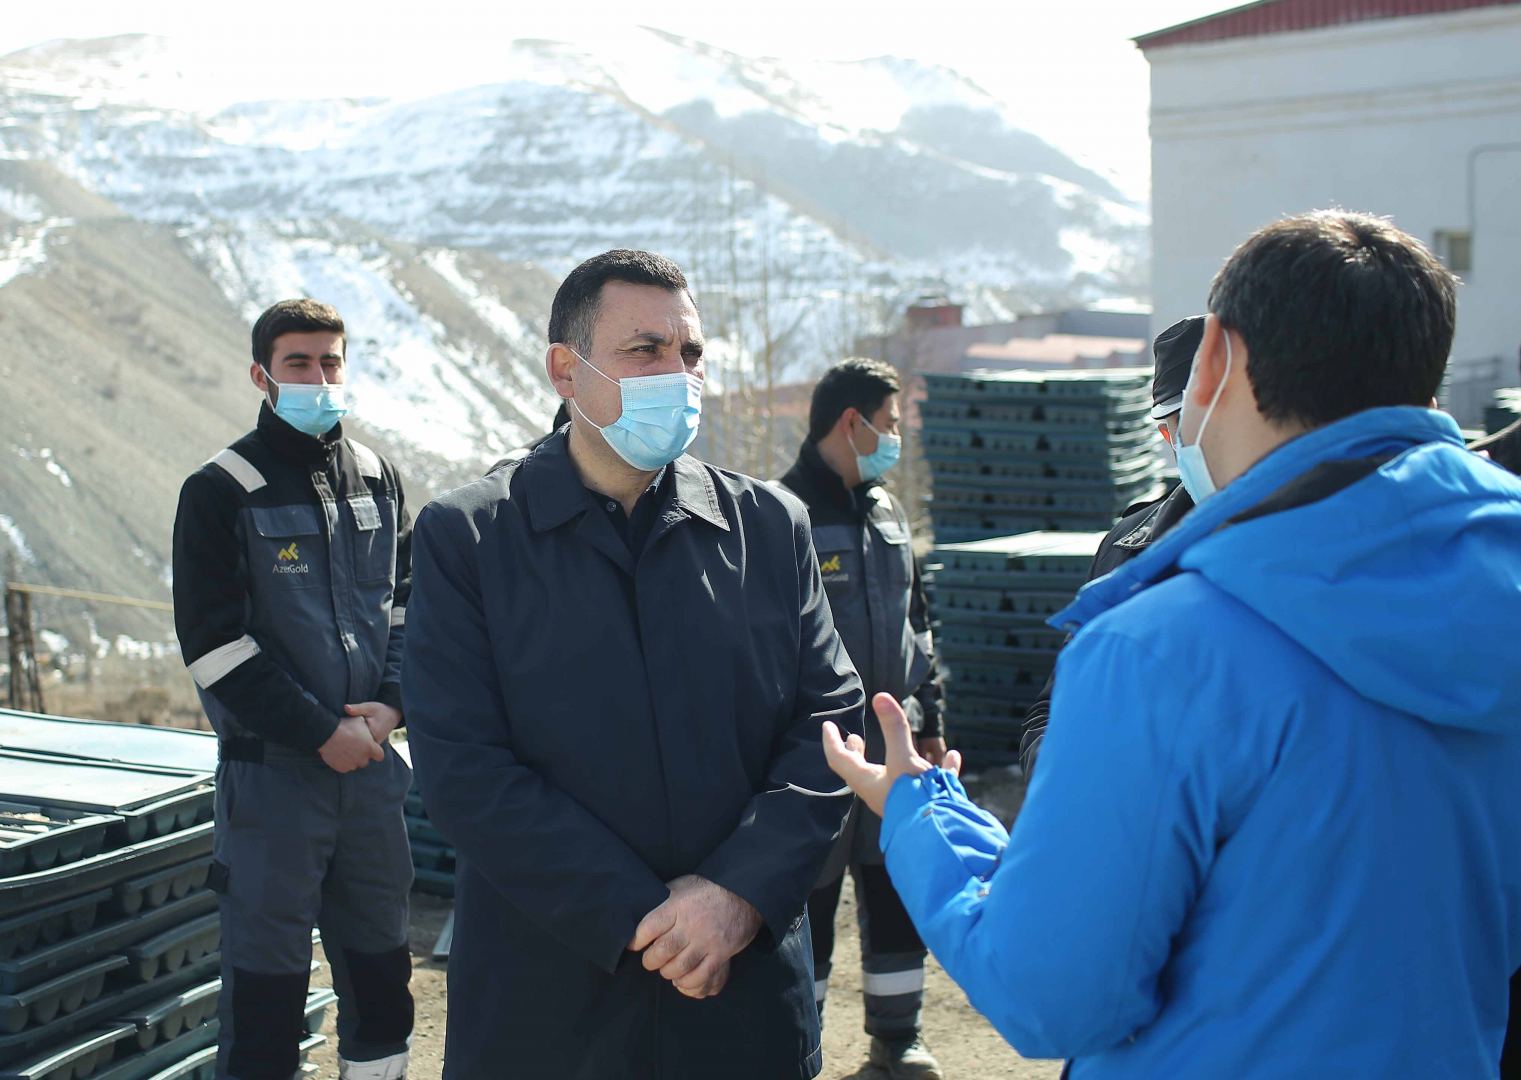 Руководство АГУНП посетили Дашкесанское железорудное месторождение (ФОТО)